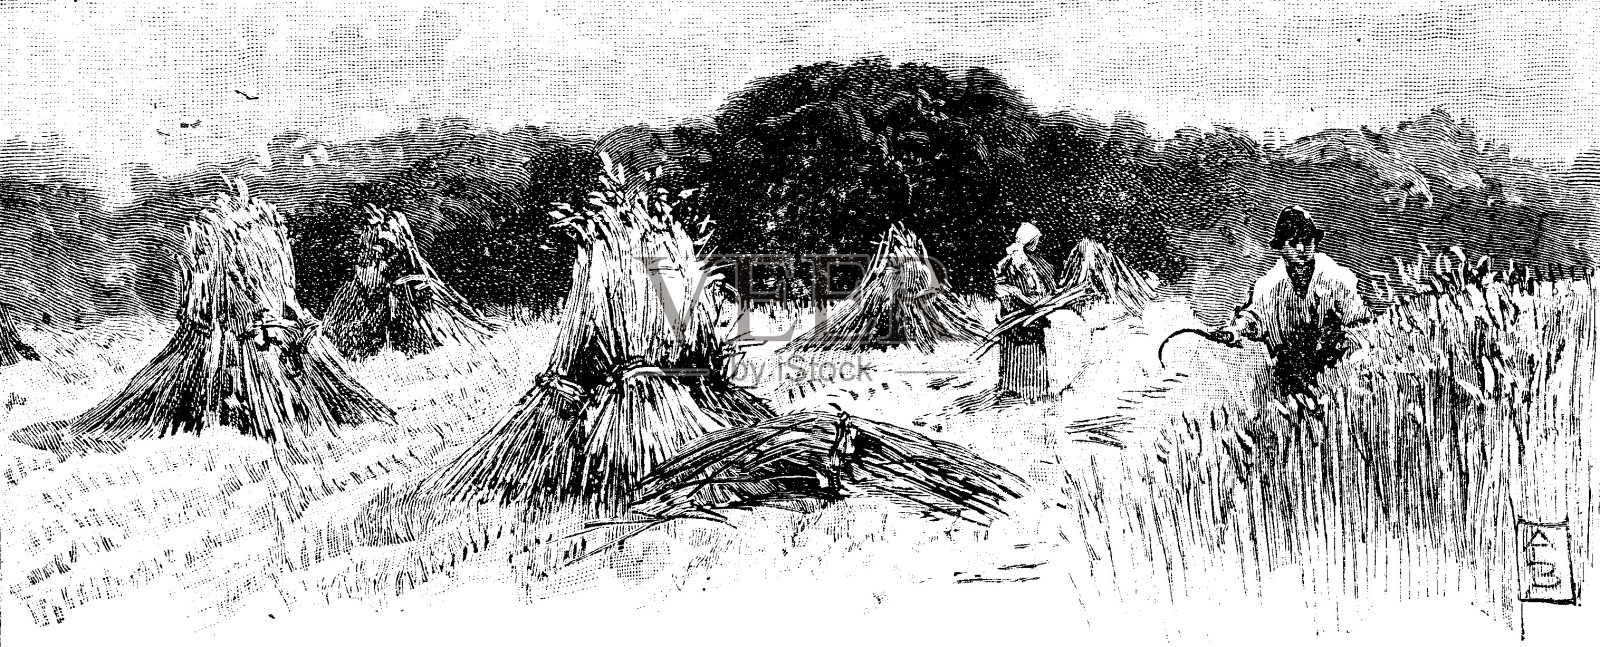 19世纪的文章插图描绘了一个典型的英国乡村在收获的时候的景象;1893年的维多利亚农业和庄稼采集插画图片素材